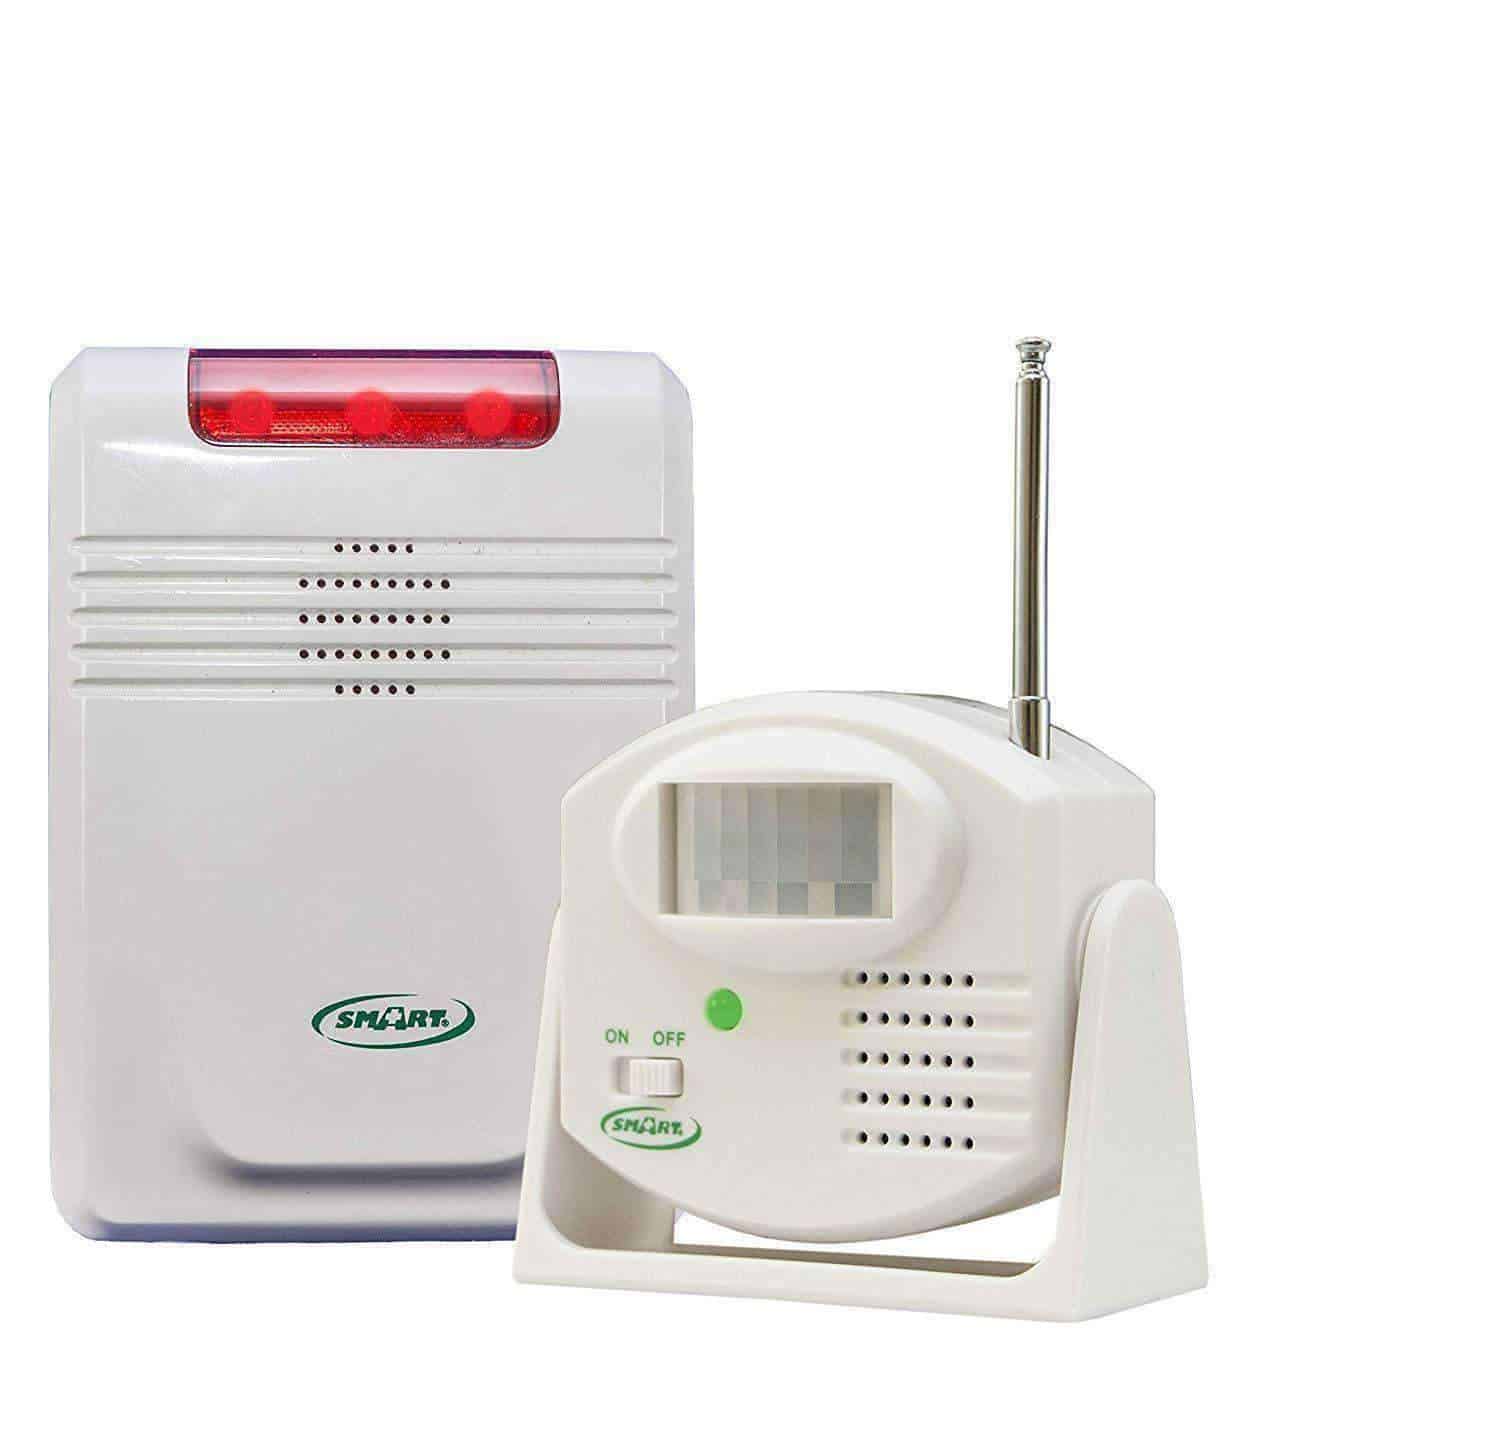 Smart Caregiver Economy Wireless Monitor & Motion Sensor - Senior.com Fall Prevention